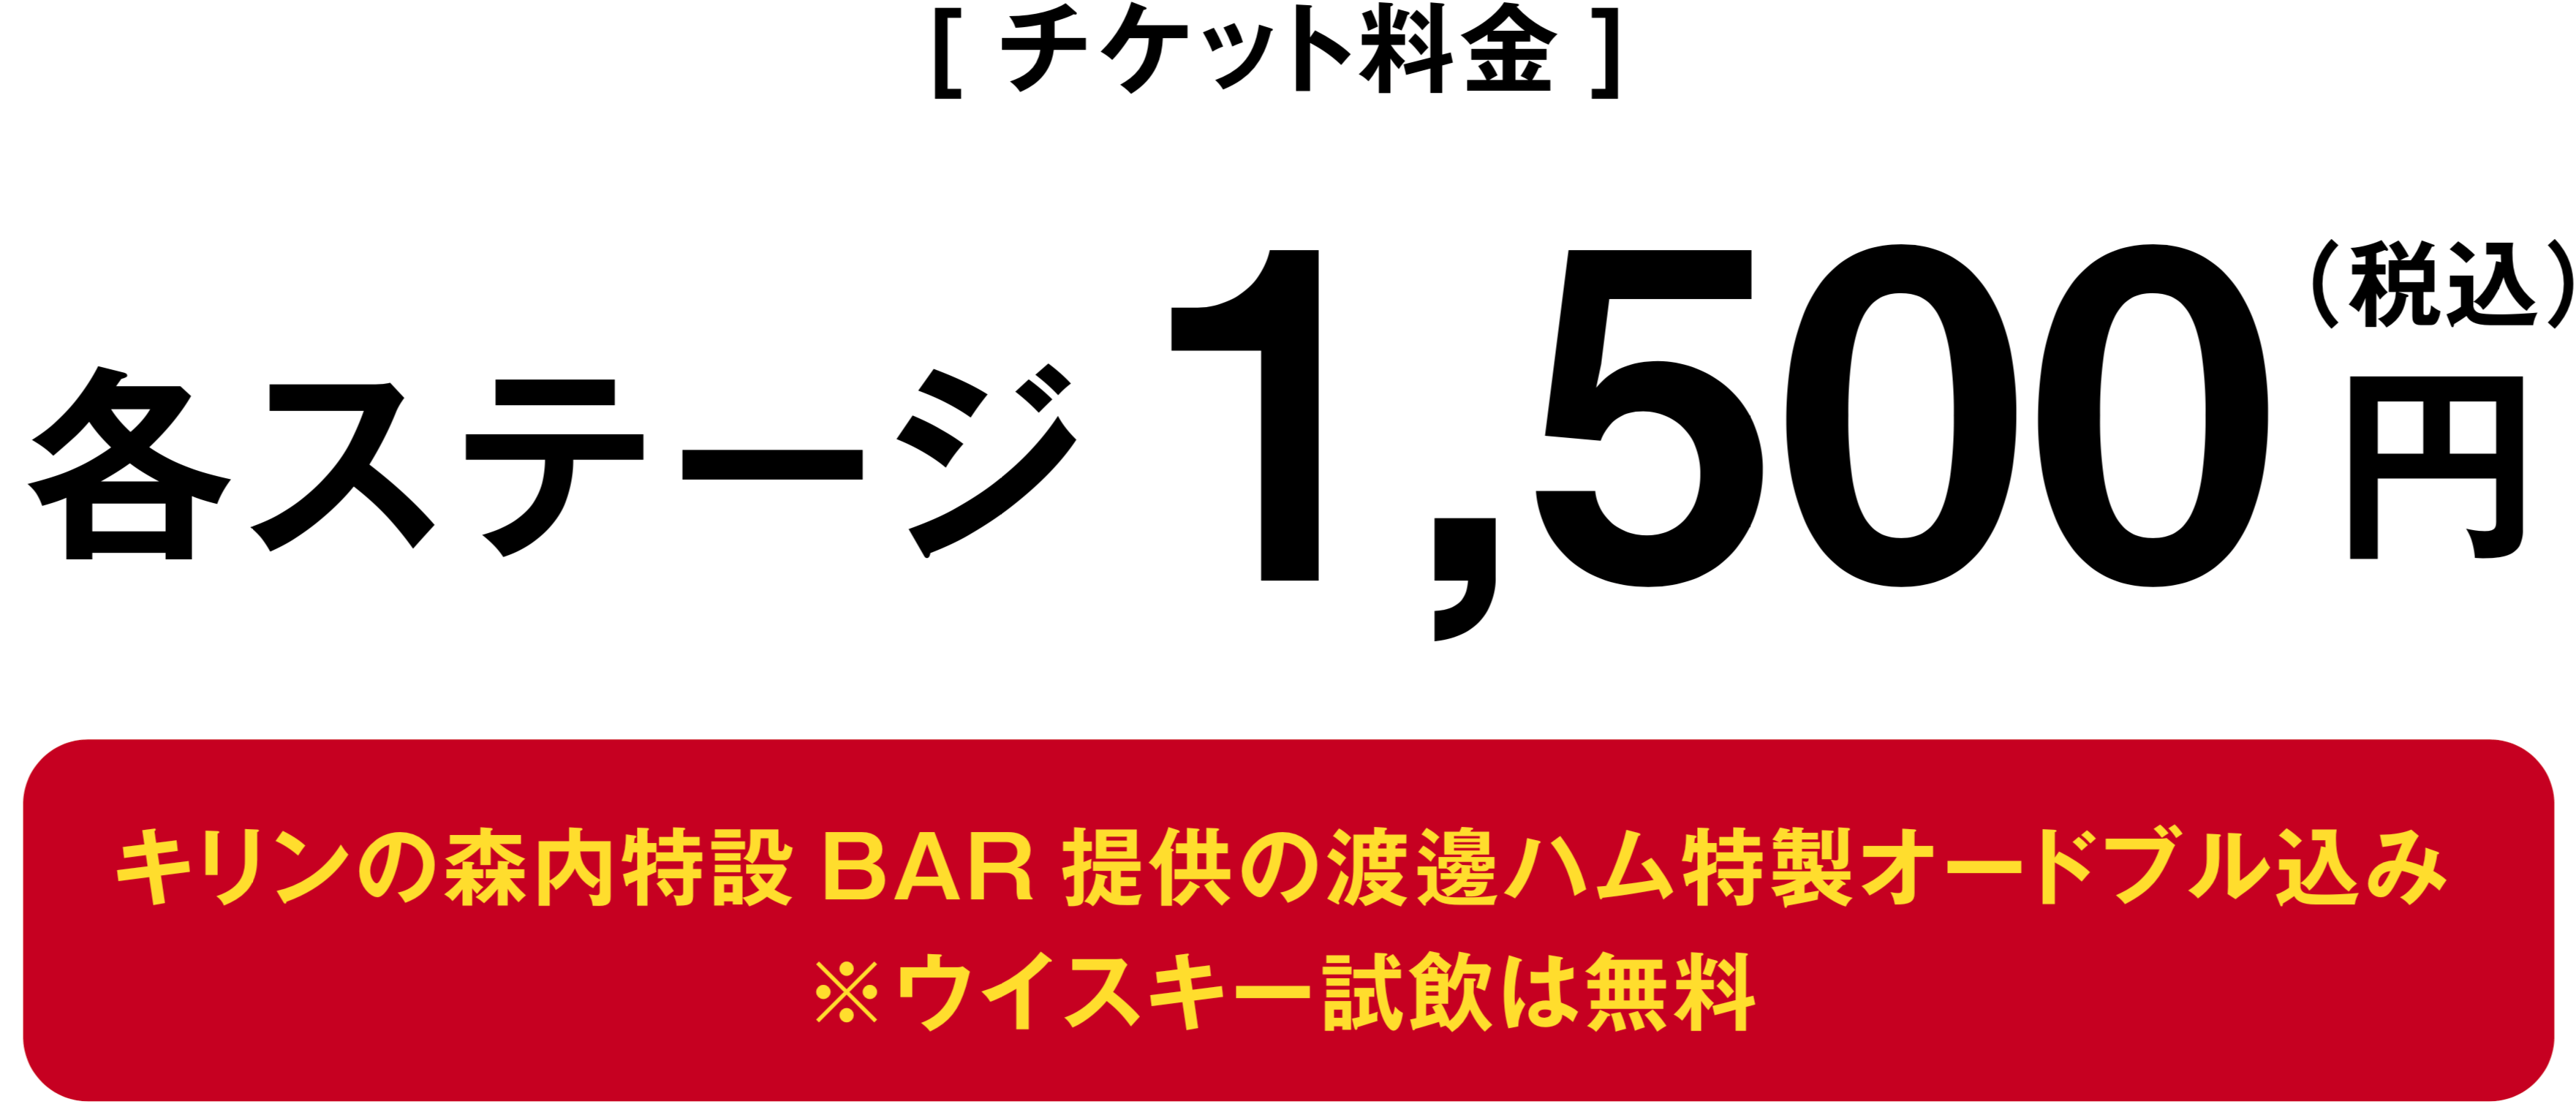 チケット料金:各ステージ1500円(税込)